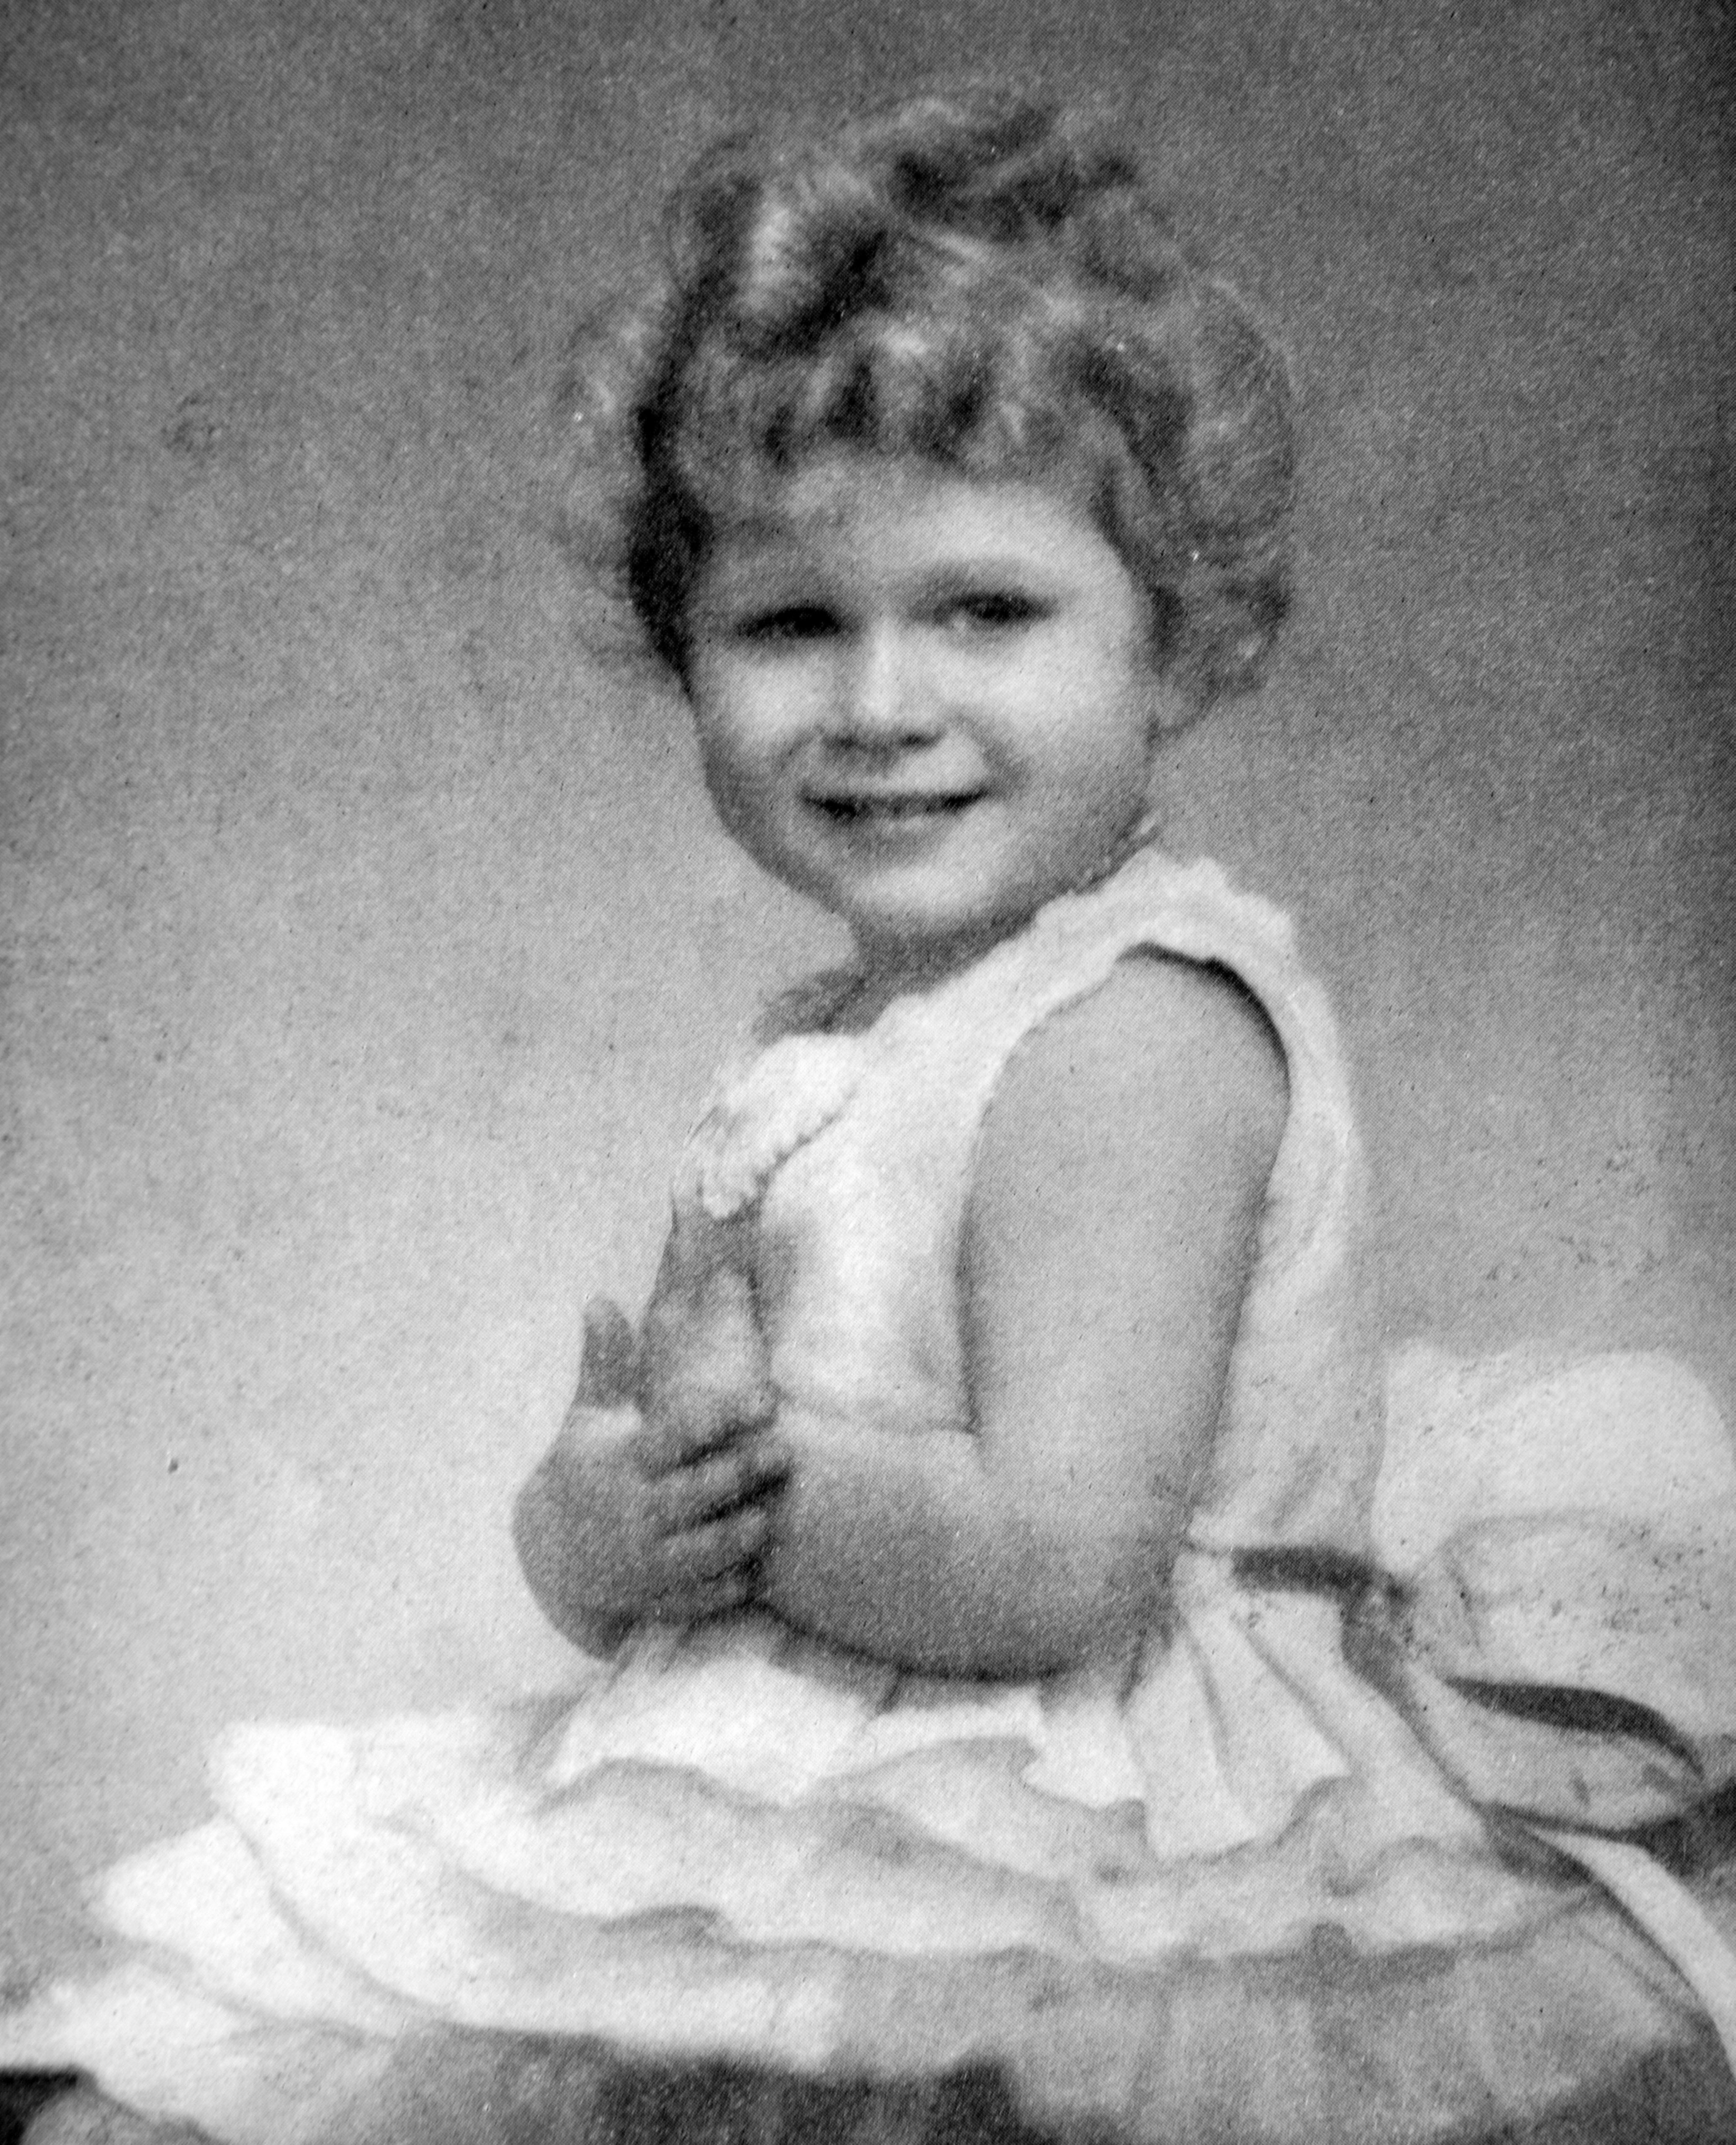 A Rainha Elizabeth 2ª em foto de 1929 ou 1930, quando tinha entre 3 e 4 anos (Foto: Getty Images)